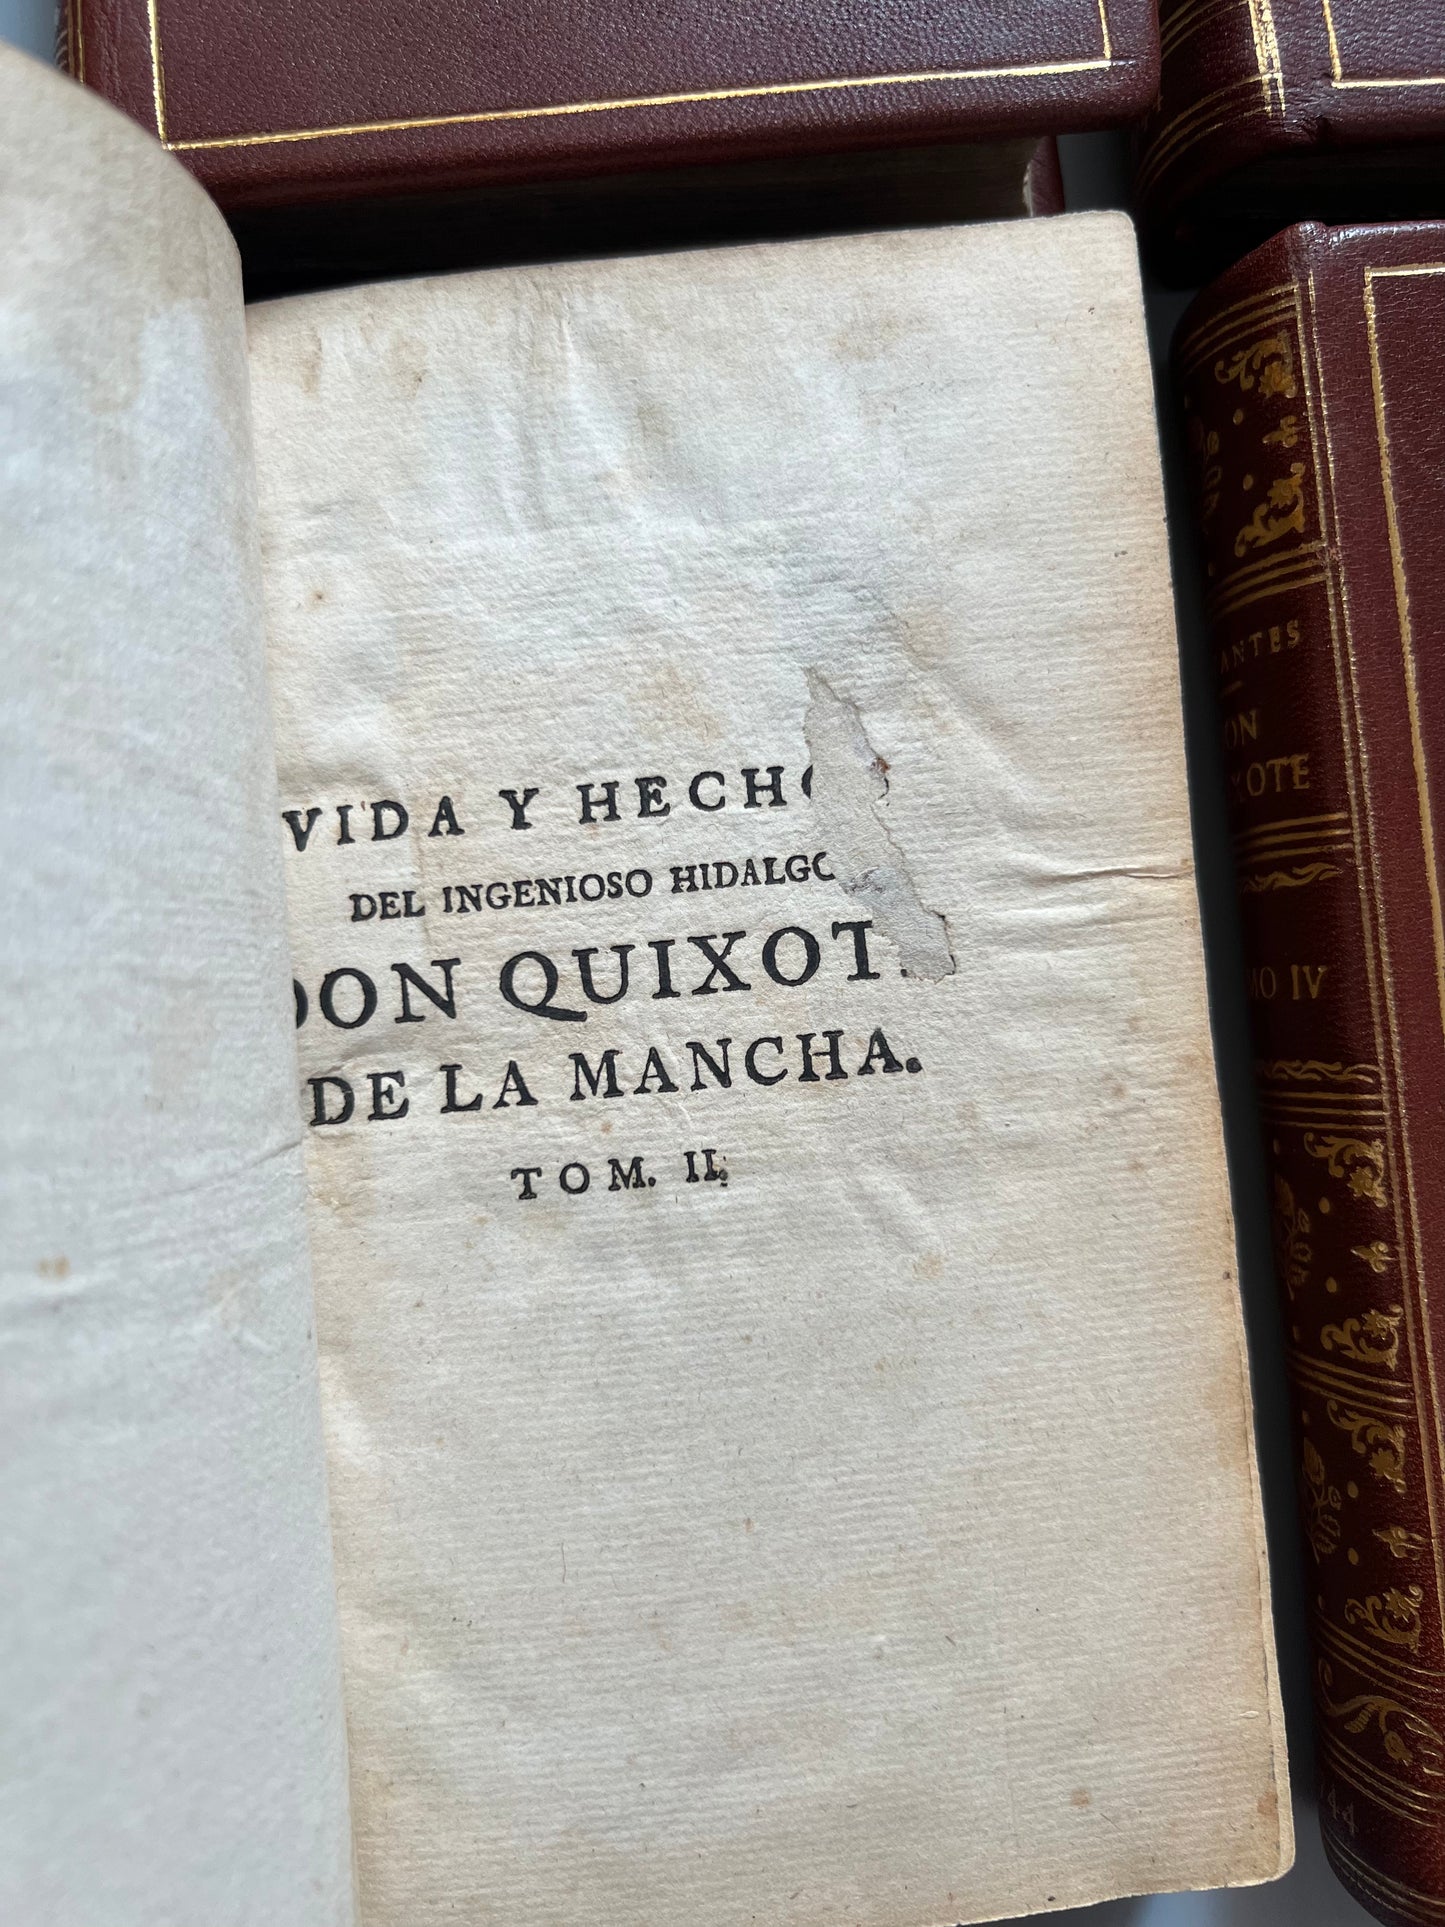 Vida y hechos del ingenioso hidalgo Don Quixote de la Mancha, Miguel de Cervantes - P. Gosse y A. Moetjens, 1744